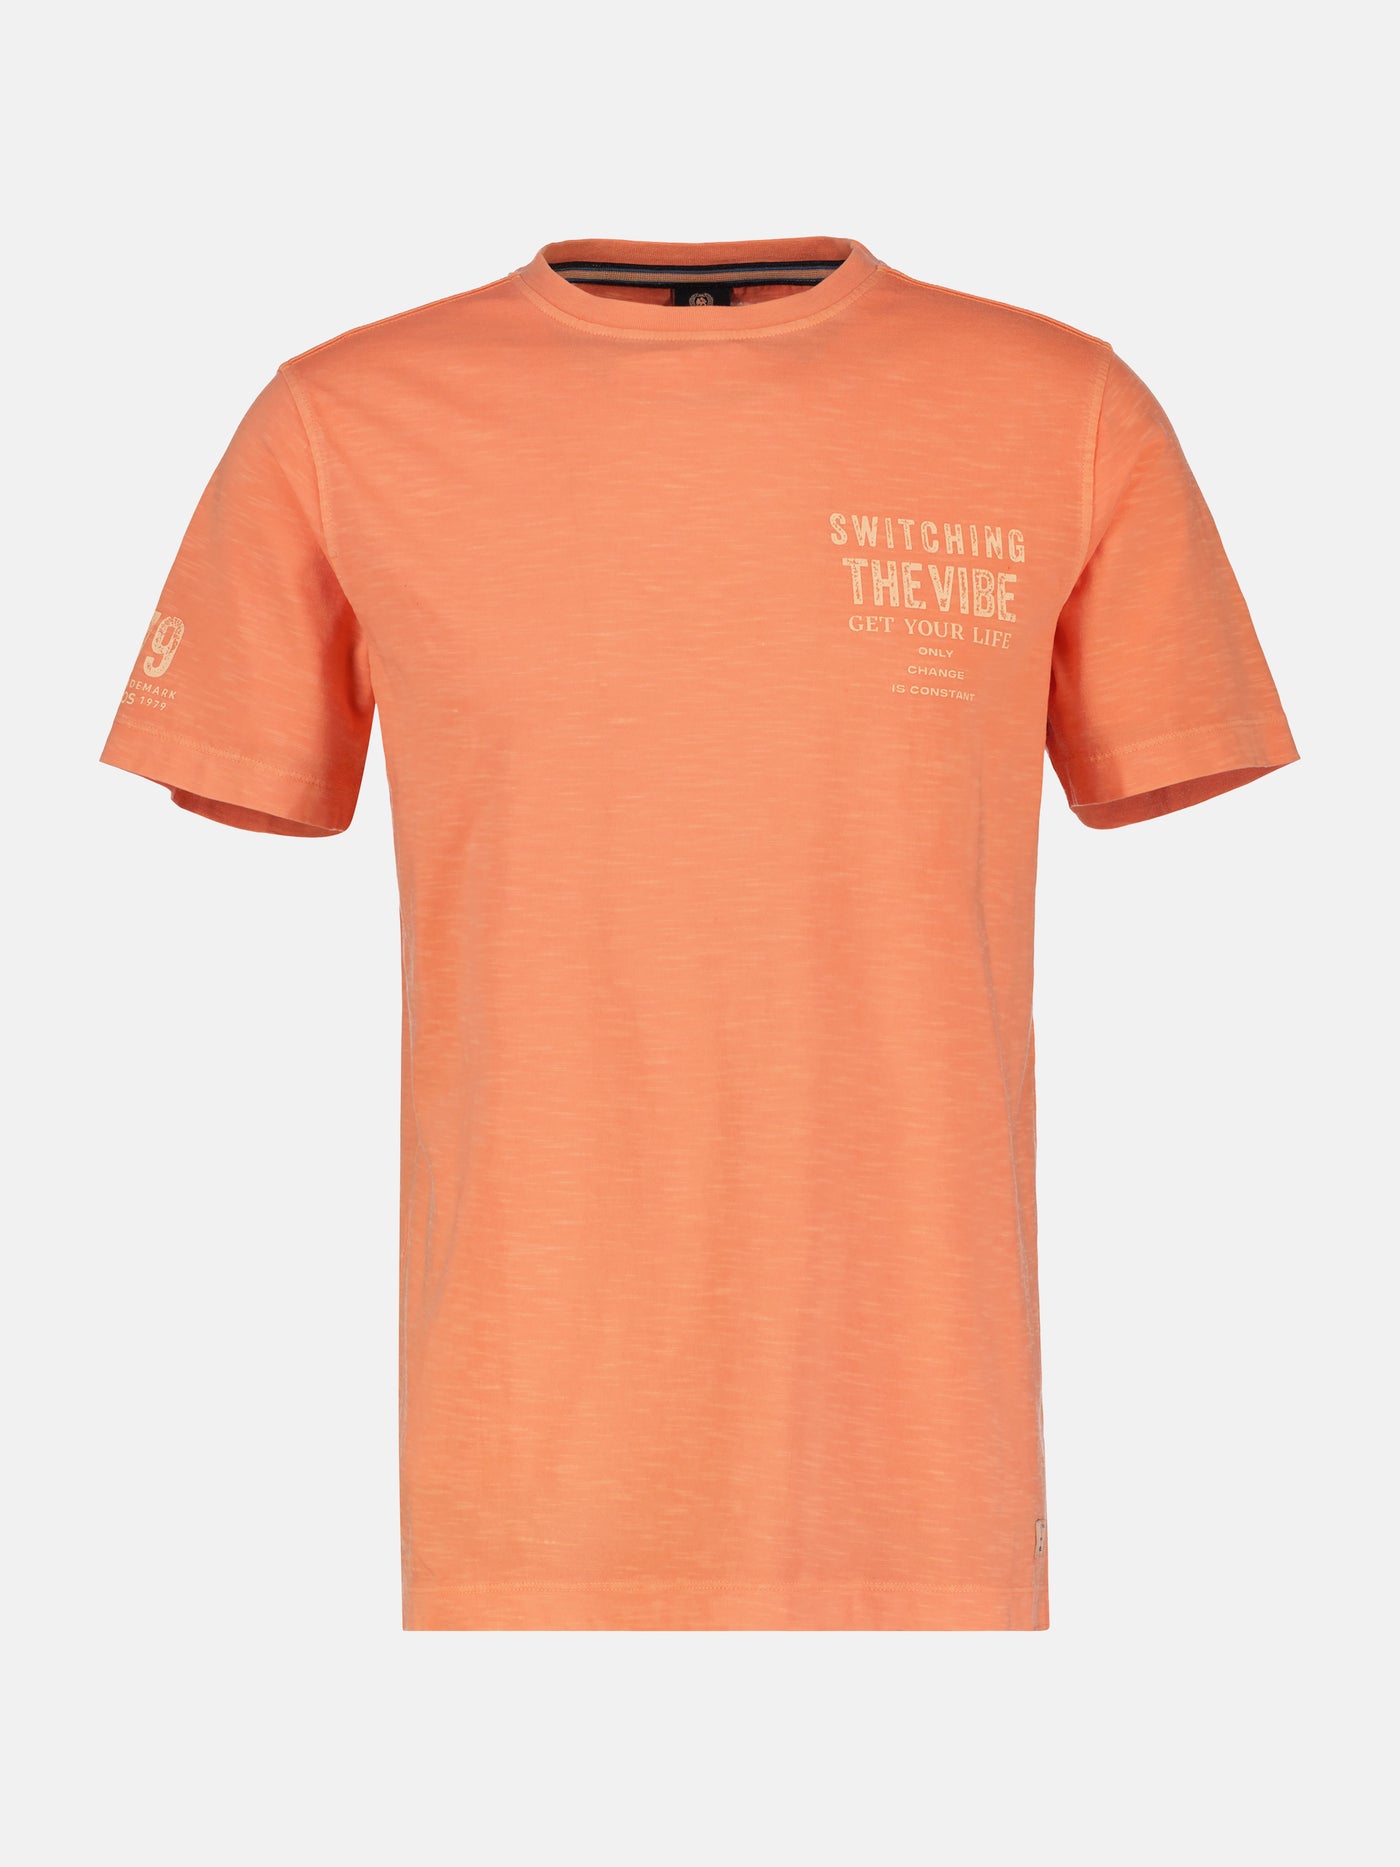 T-shirt voor heren met borstprint